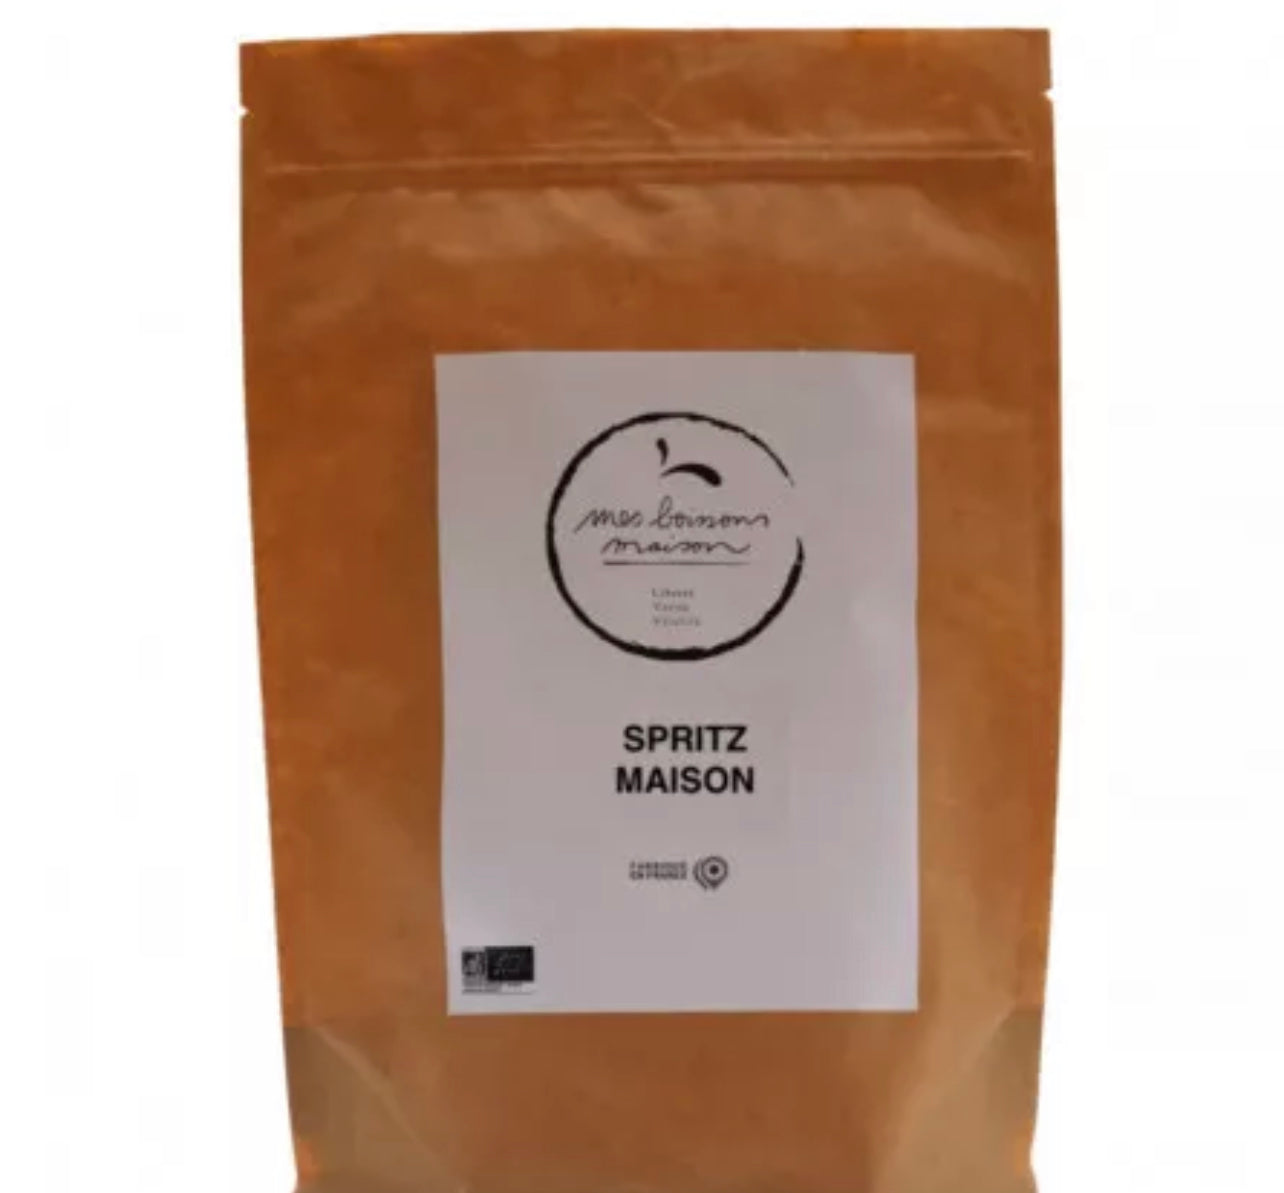 Homemade spritz - 560g